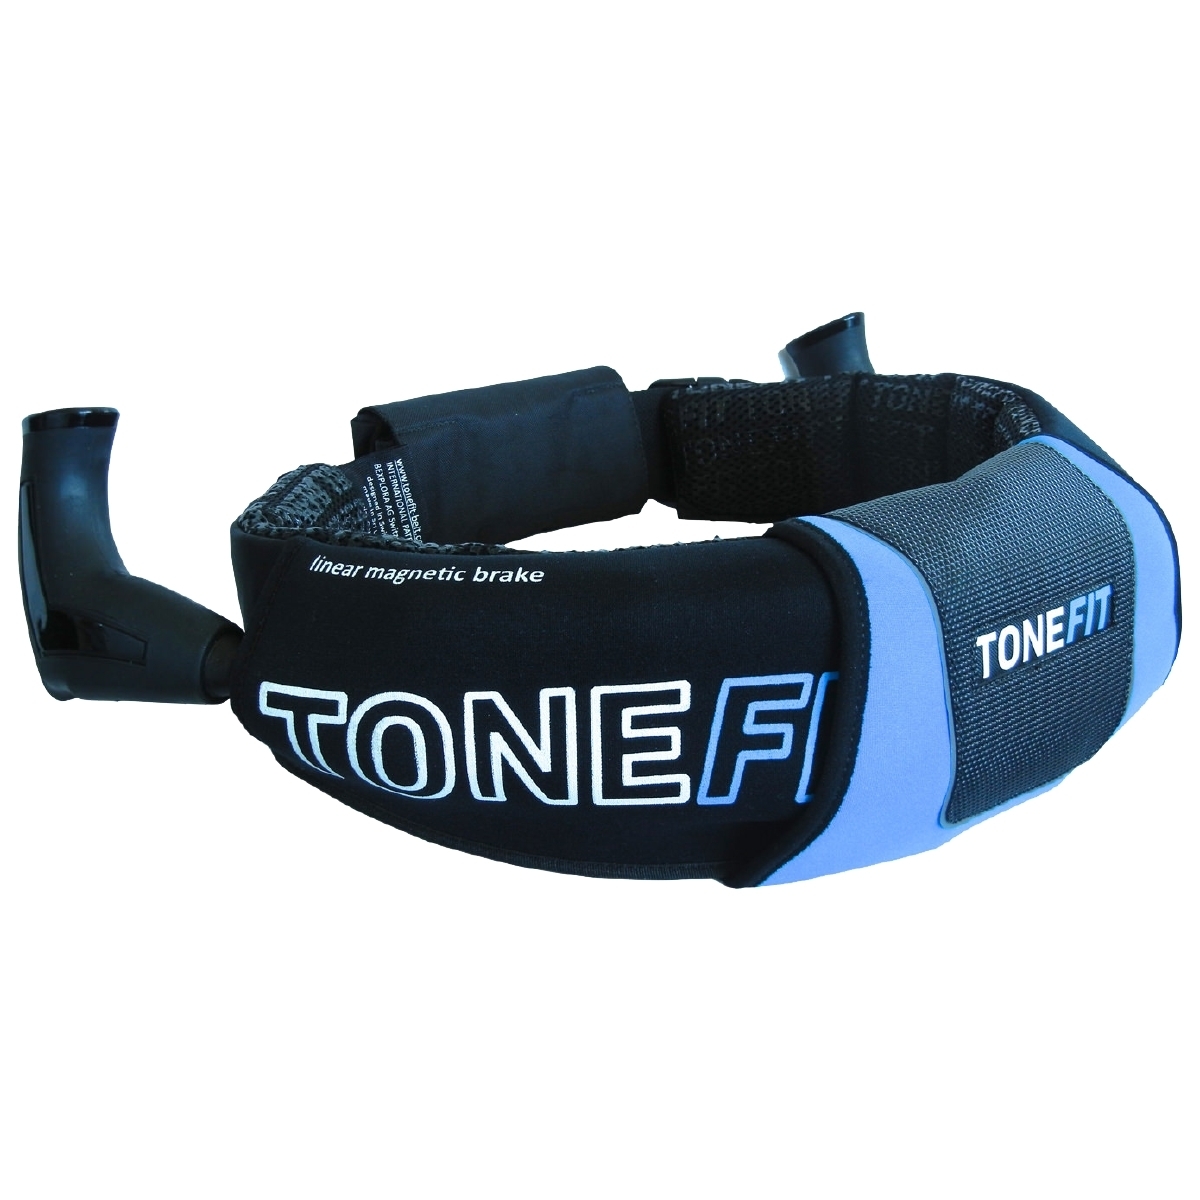 Tonefit Tonefit Gürtel Sportgerät schwarz